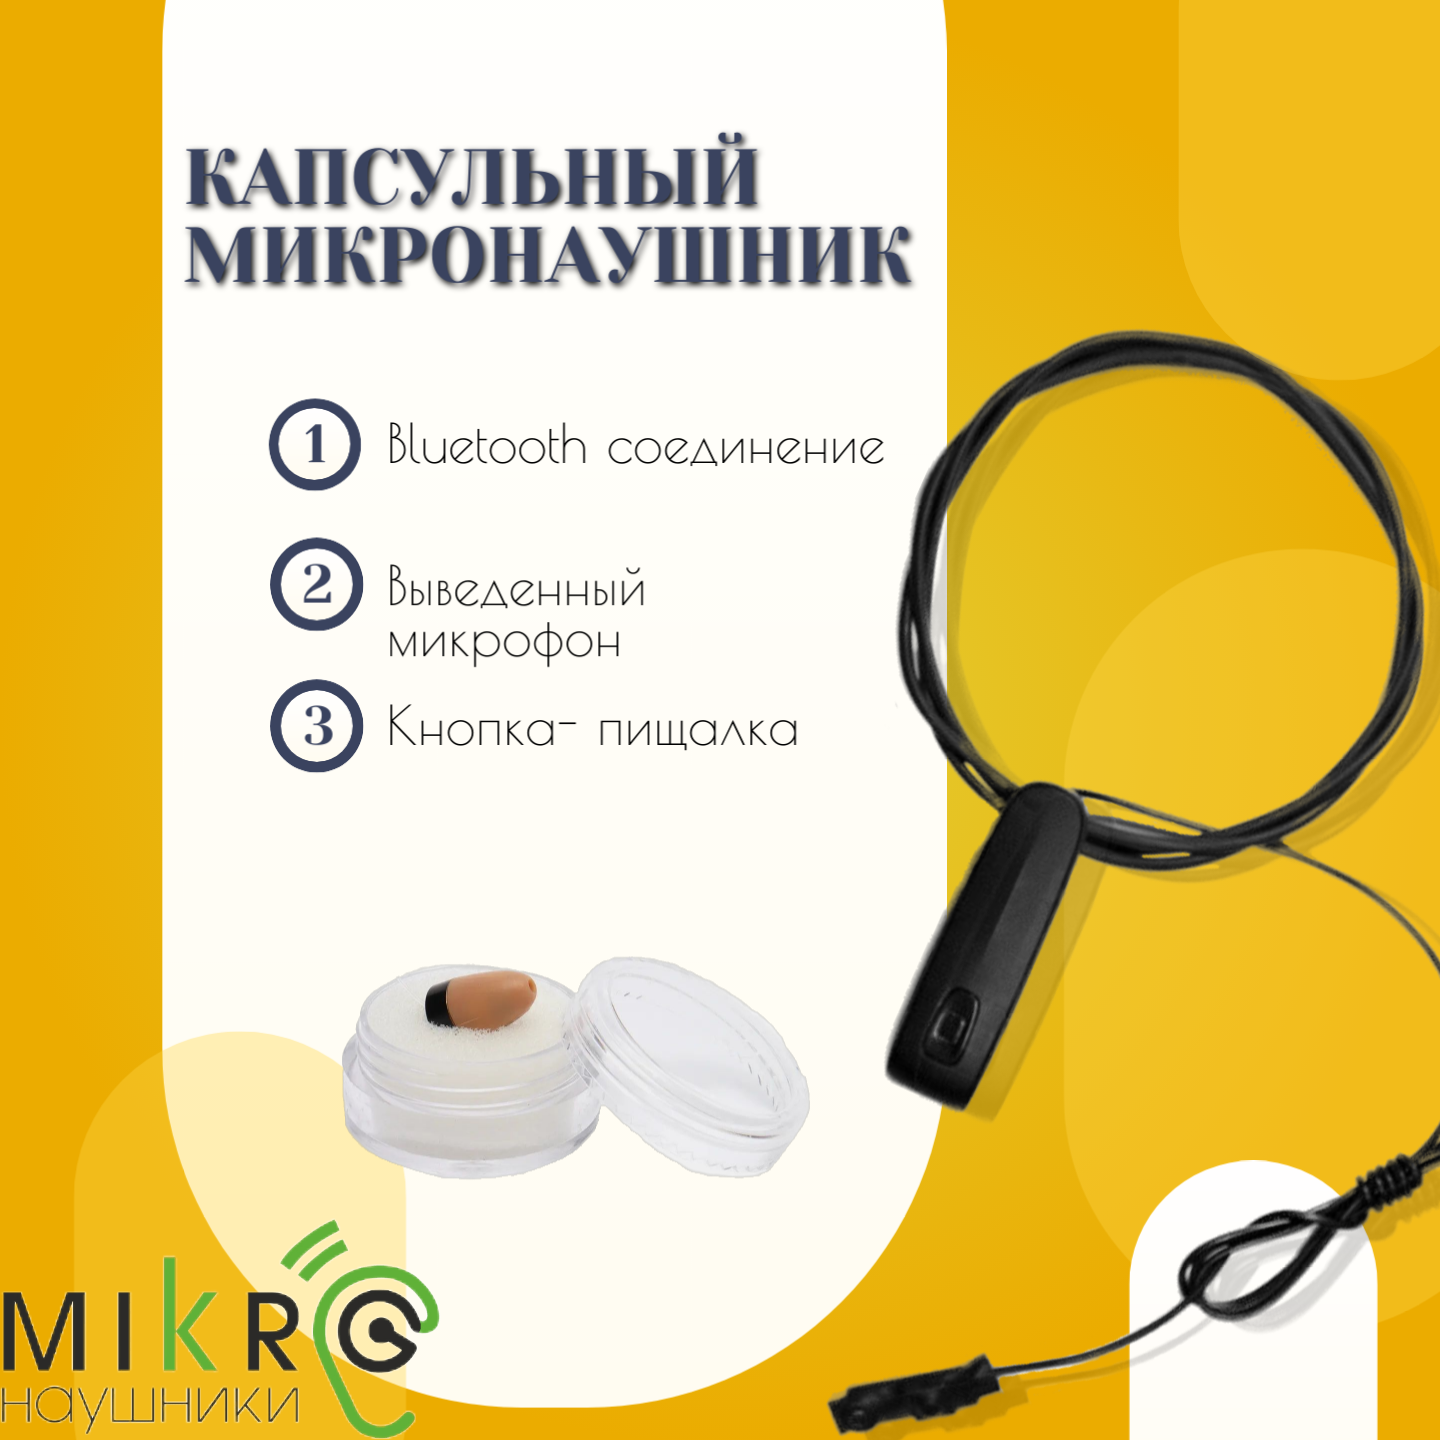 Микронаушник капсульный Bluetooth с выведенным микрофоном и кнопкой-пищалкой